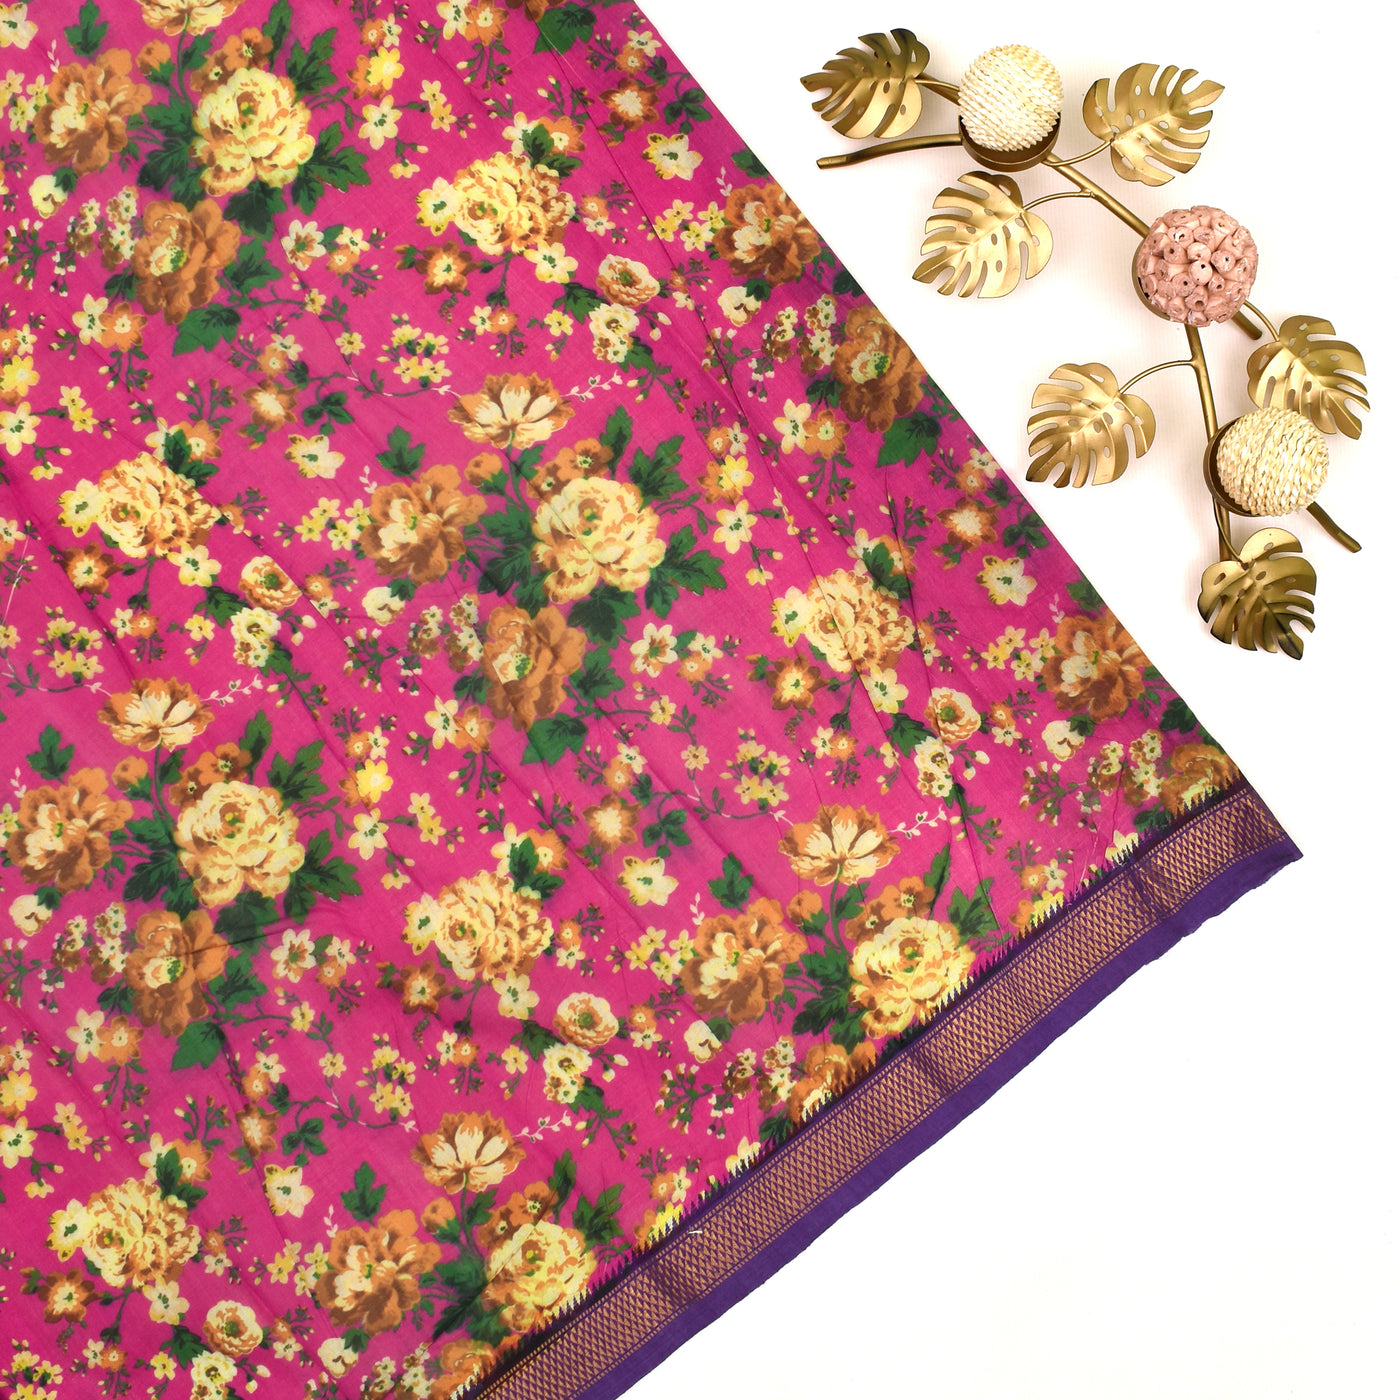 Rani Pink Floral Printed Mangalagiri Cotton Saree